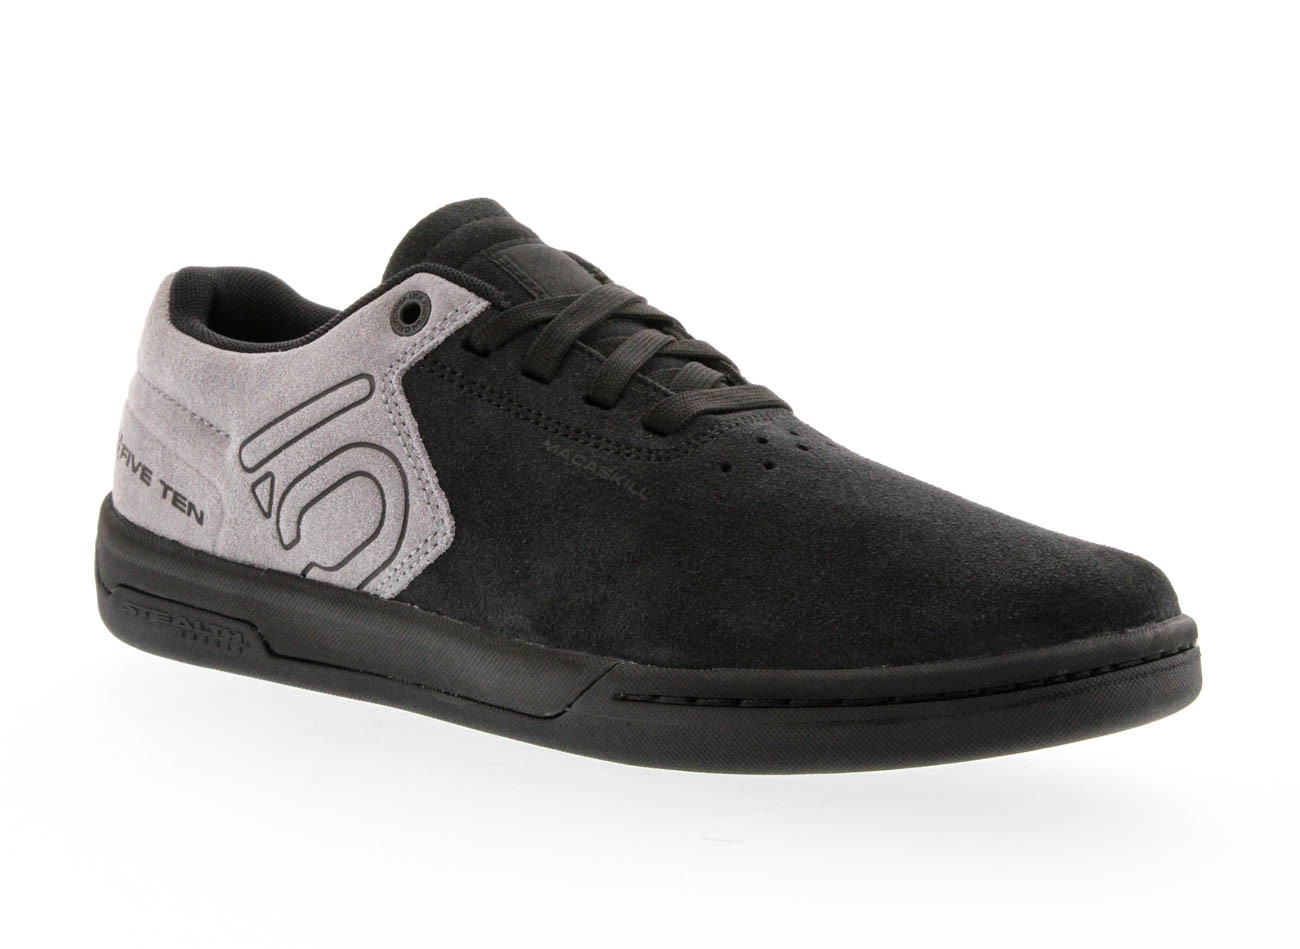 Five Ten Men's Danny Macaskill Shoe Size US-6.0 EUR-38.0 Carbon Black 